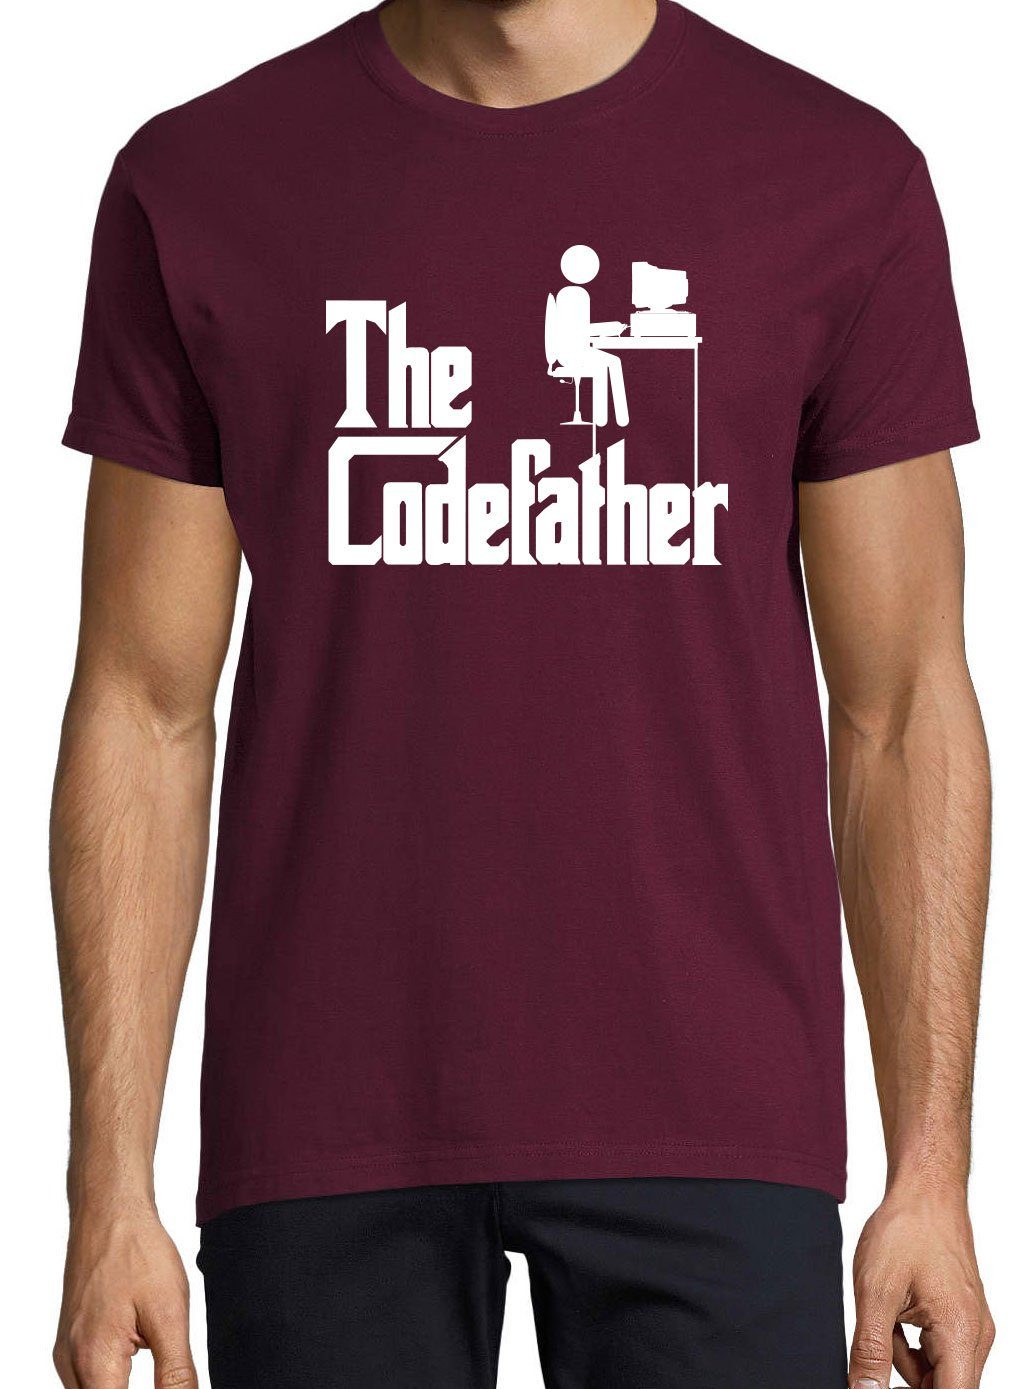 The T-Shirt mit Burgund Codefather Youth Designz lustigem Frontprint Herren T-Shirt